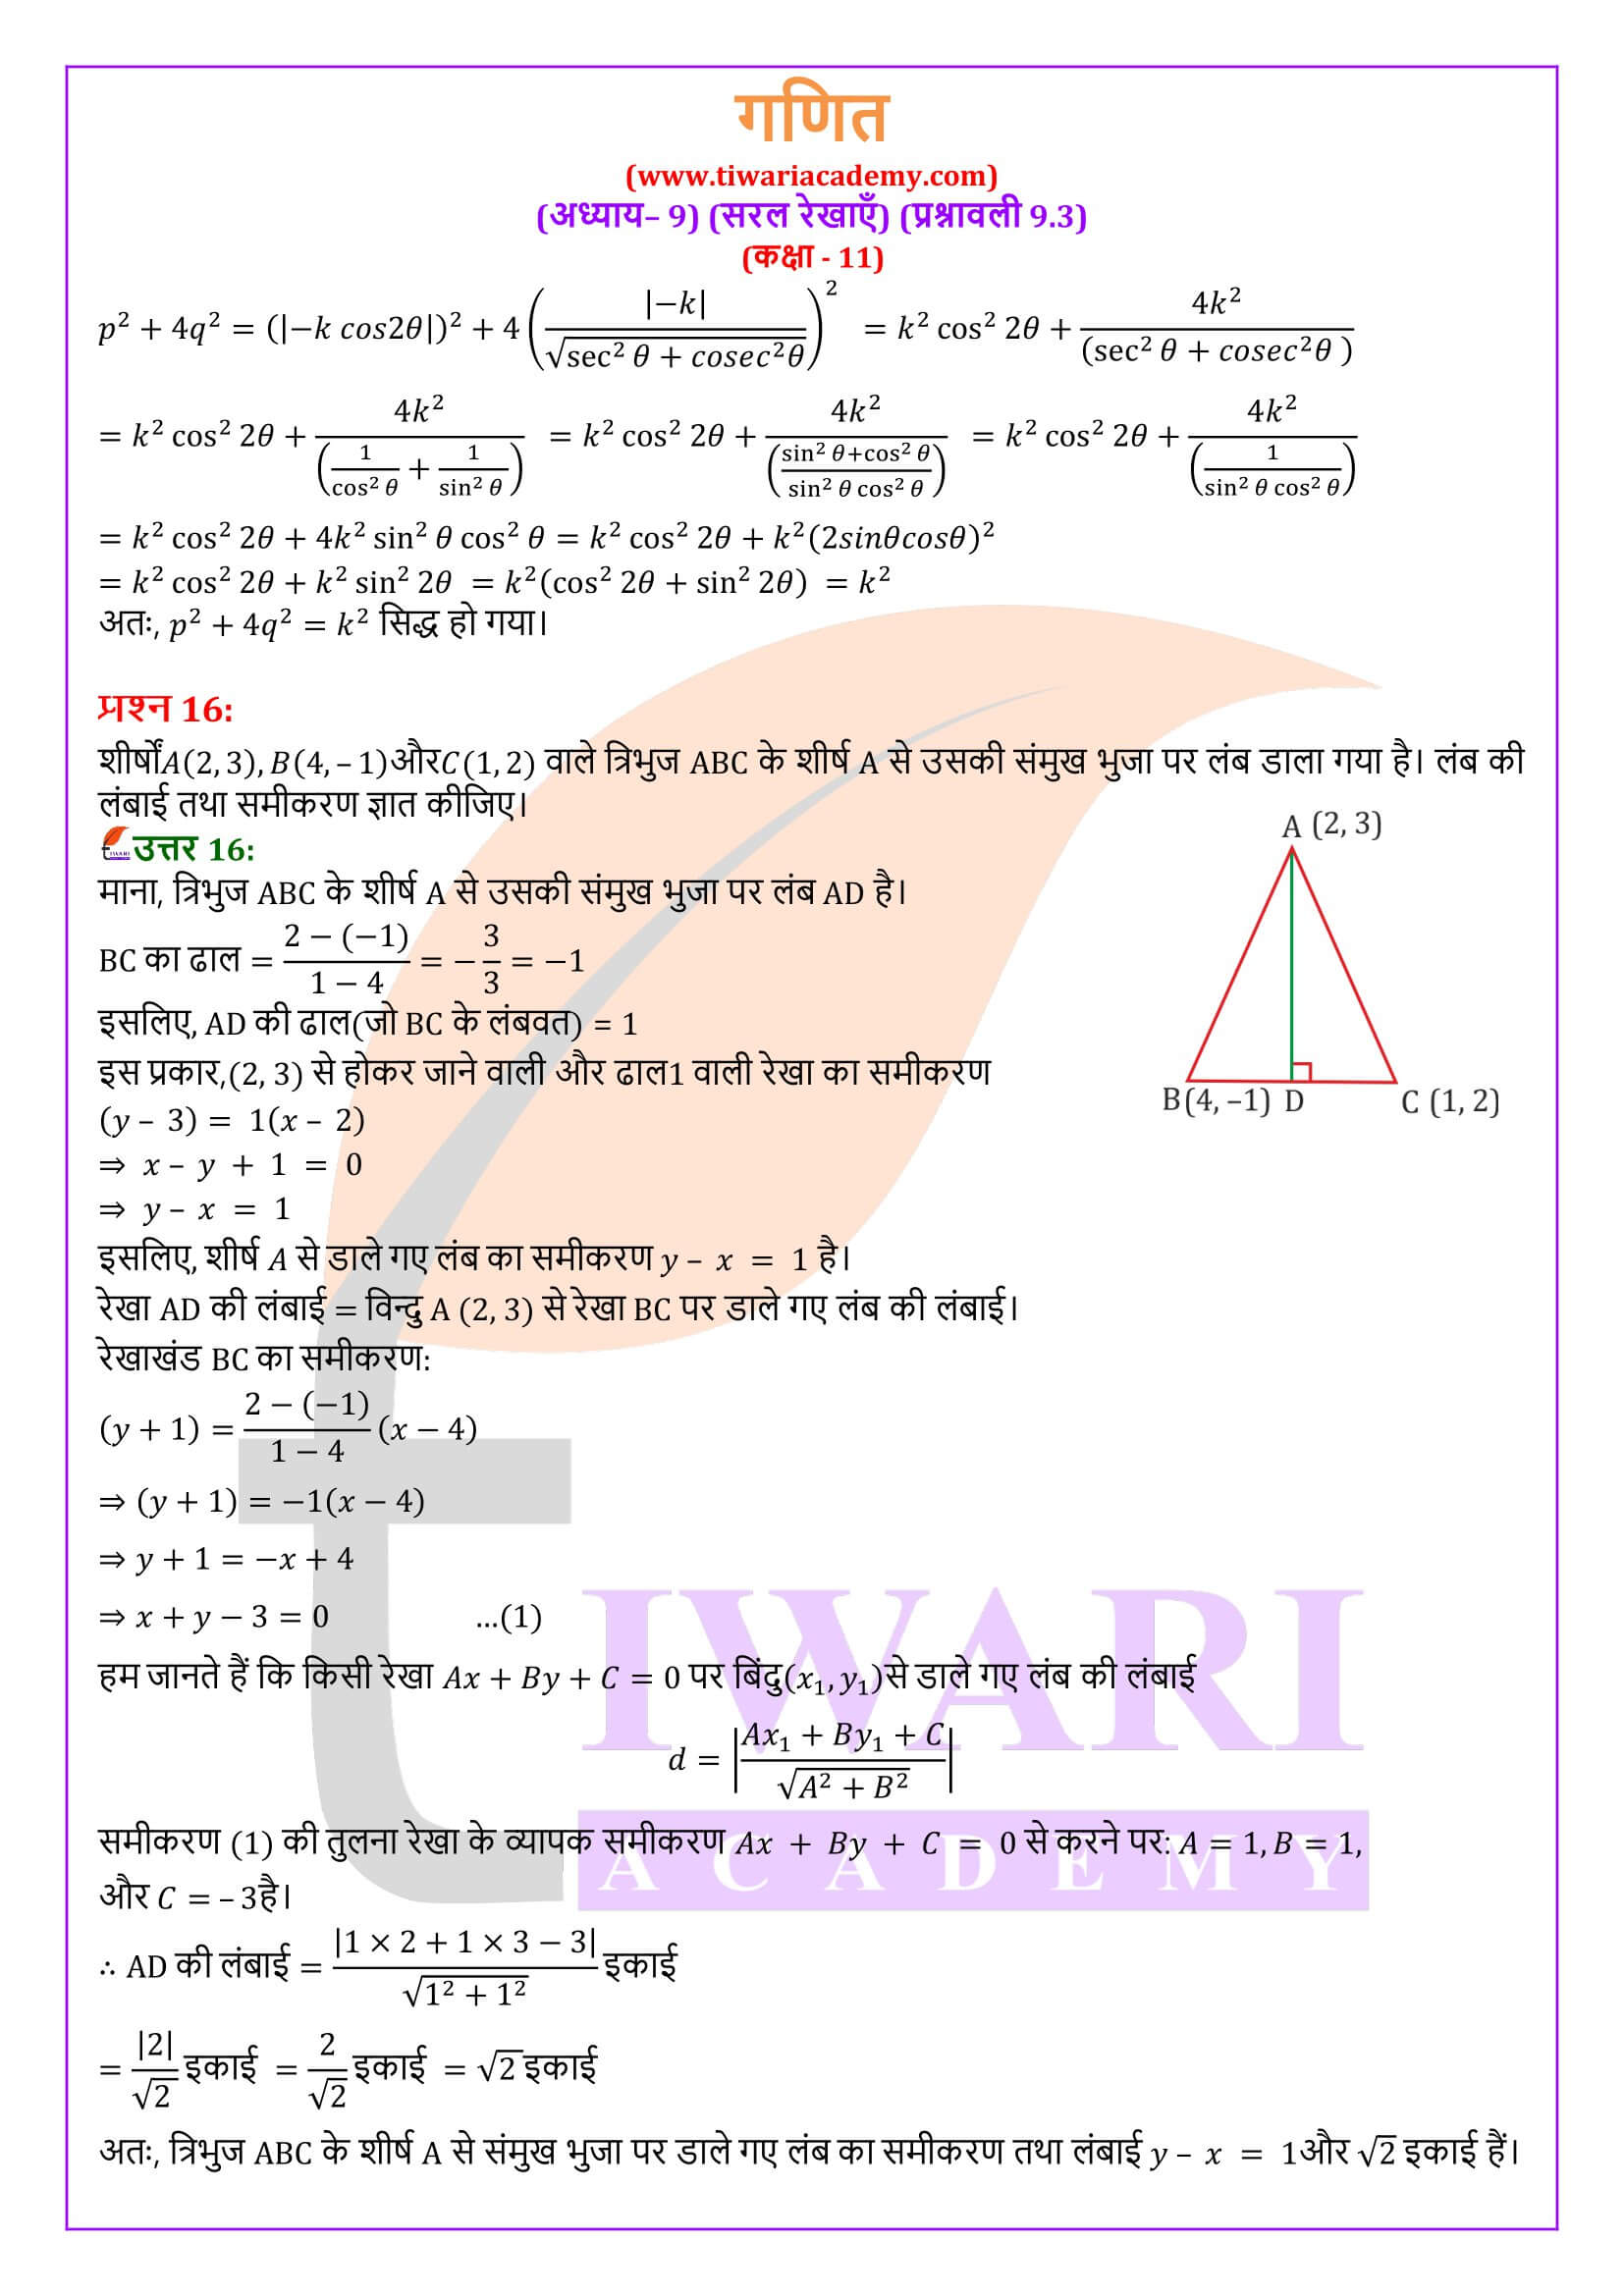 एनसीईआरटी समाधान कक्षा 11 गणित अभ्यास 9.3 के हल हिंदी में